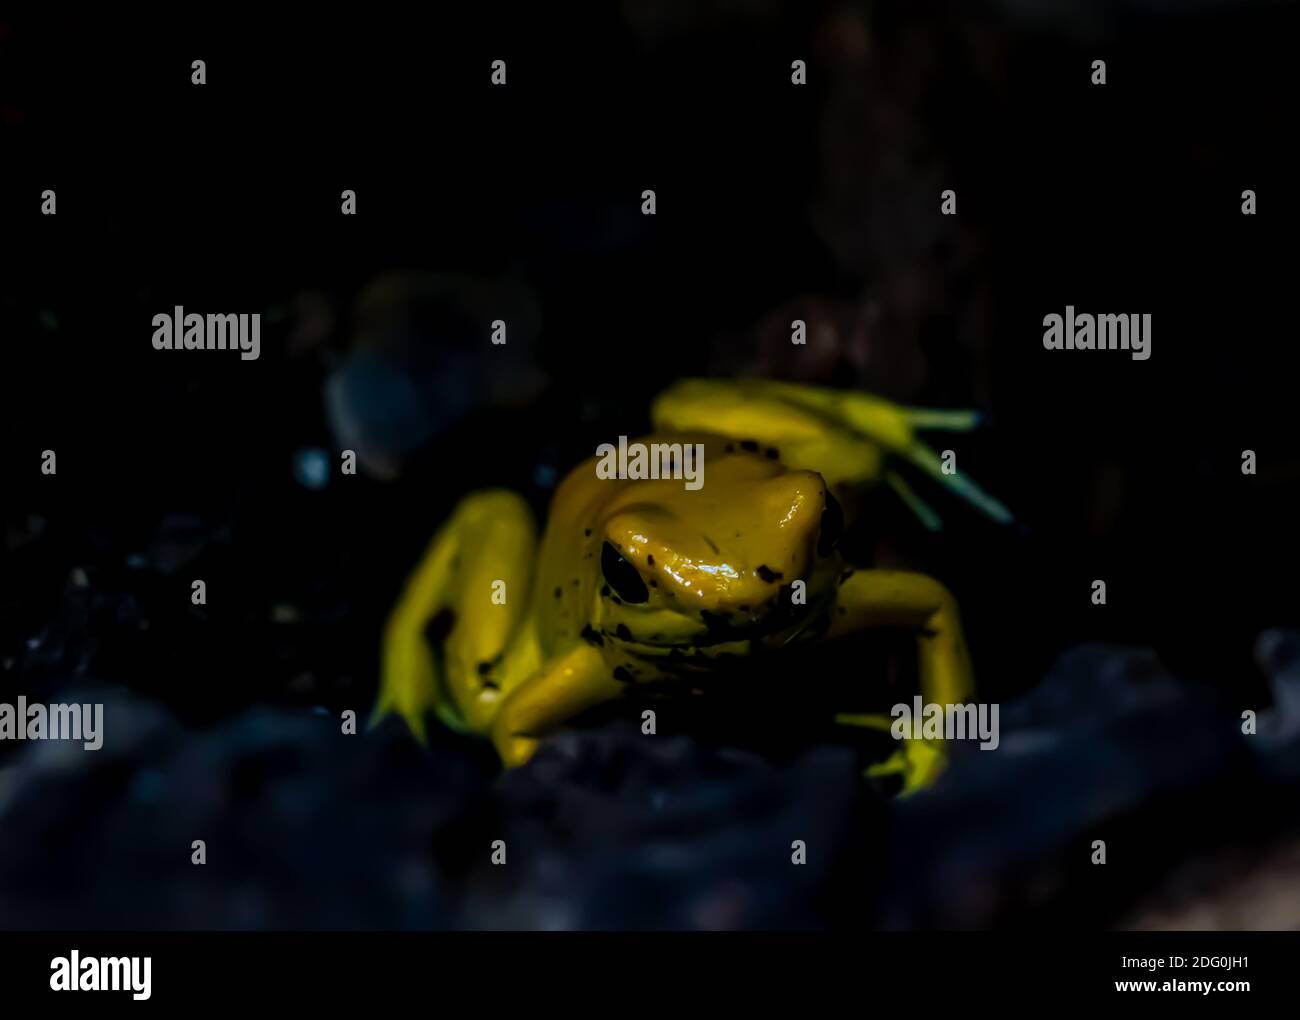 Gros plan d'une grenouille jaune venimeuse à fléchettes sur le sol de la forêt tropicale. Faible profondeur de champ. Banque D'Images